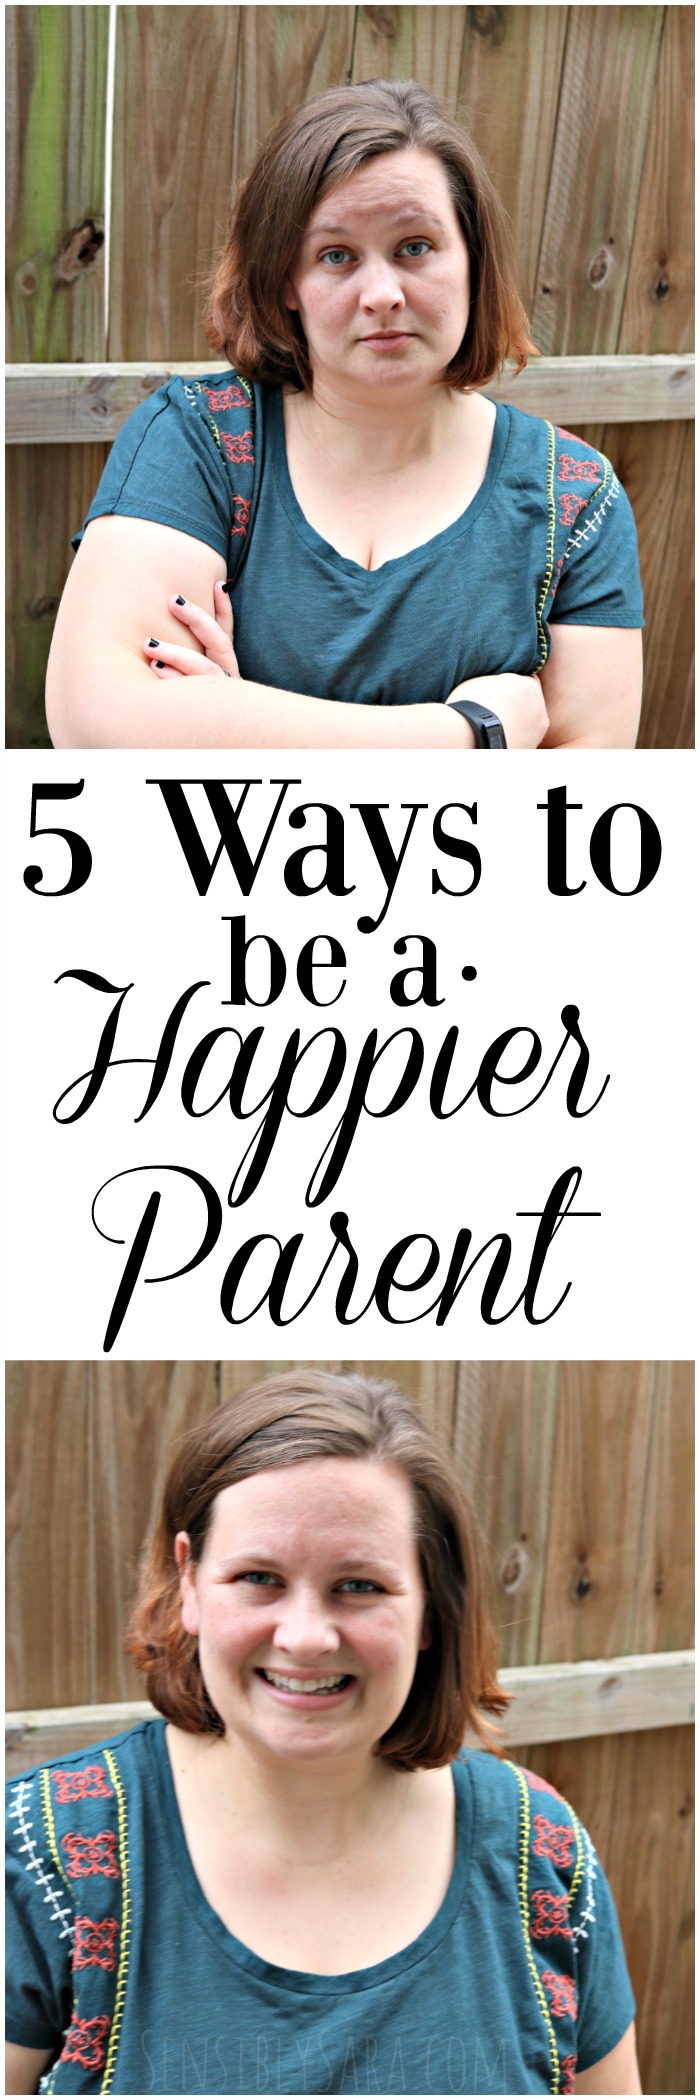 5 Ways to Be a Happier Parent | SensiblySara.com